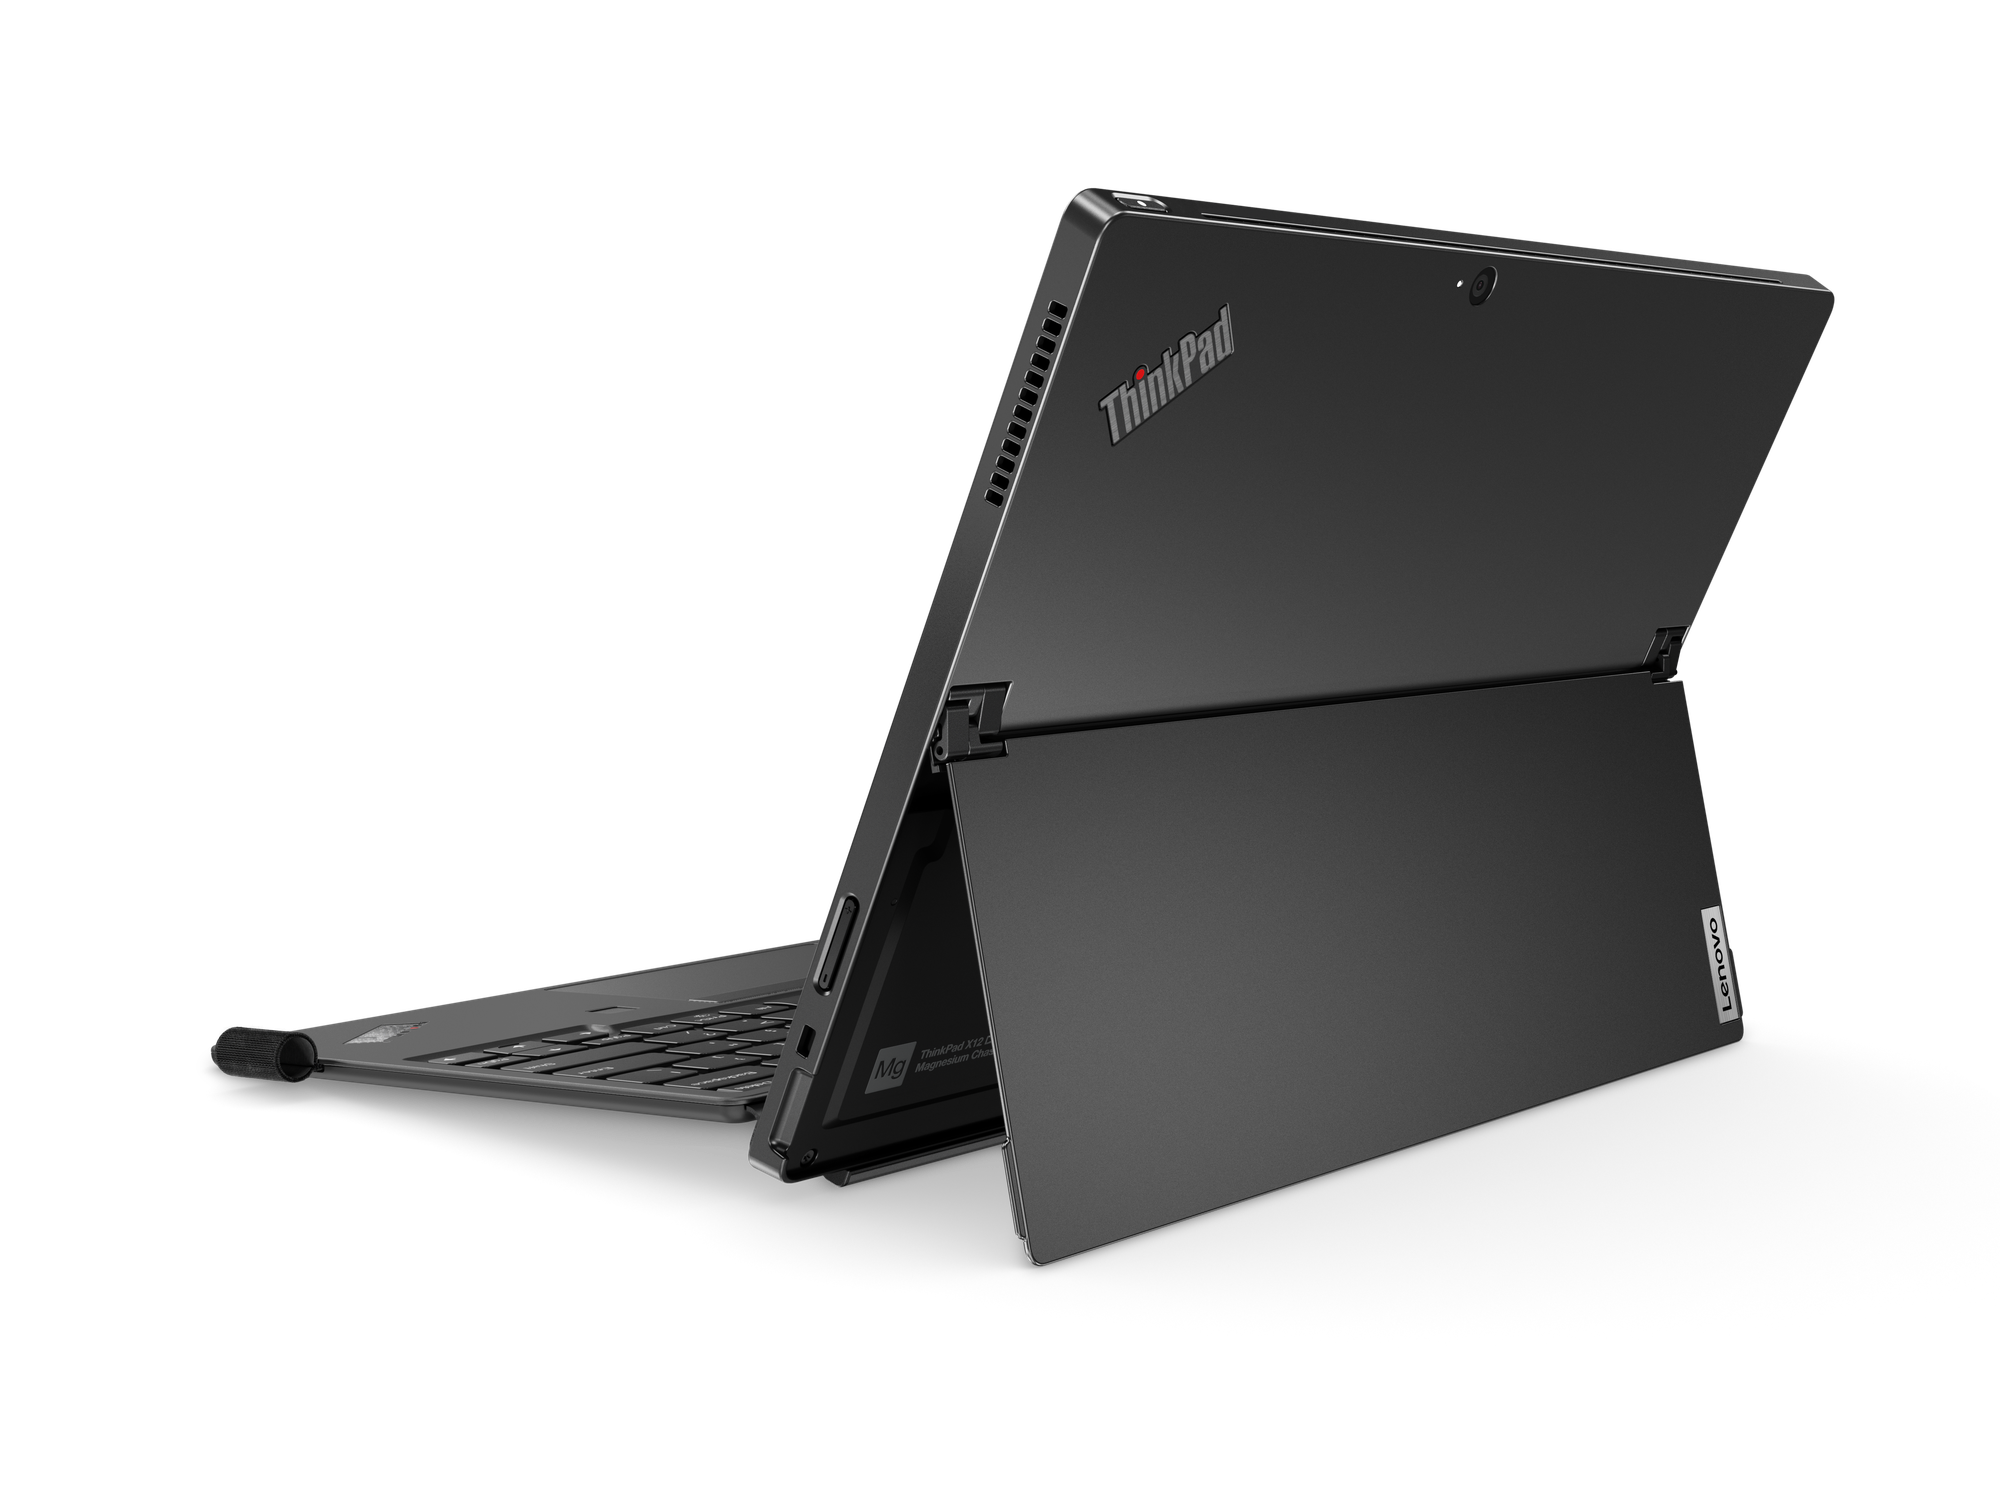 04 ThinkPad X12 Detachable Hero rear facing right